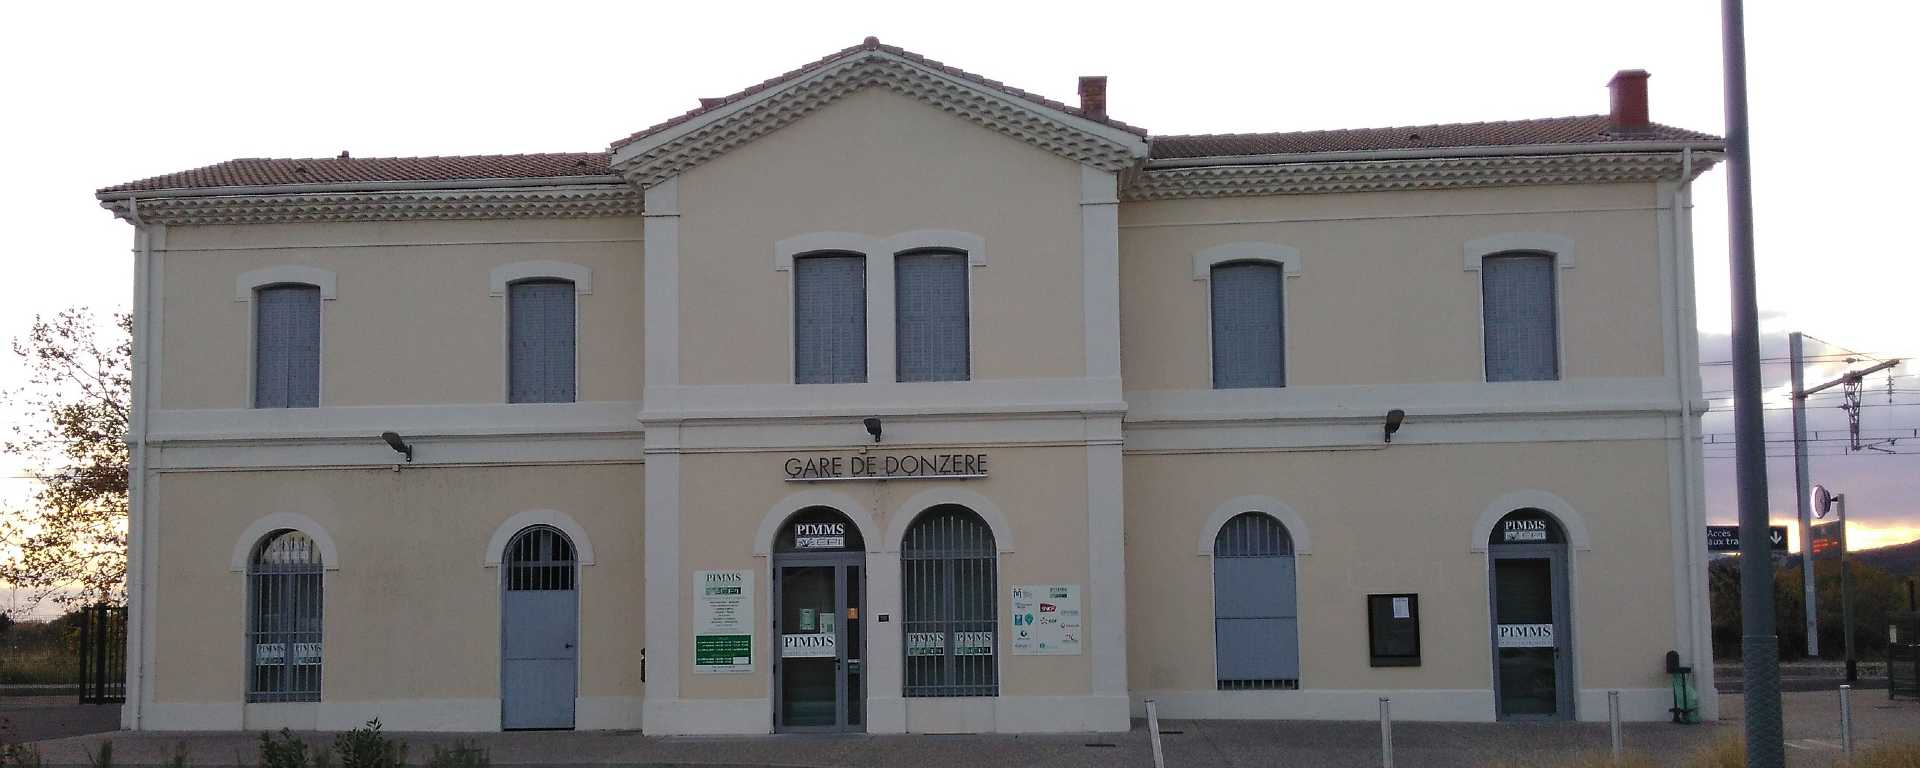 Gare de Donzère dans la Drôme